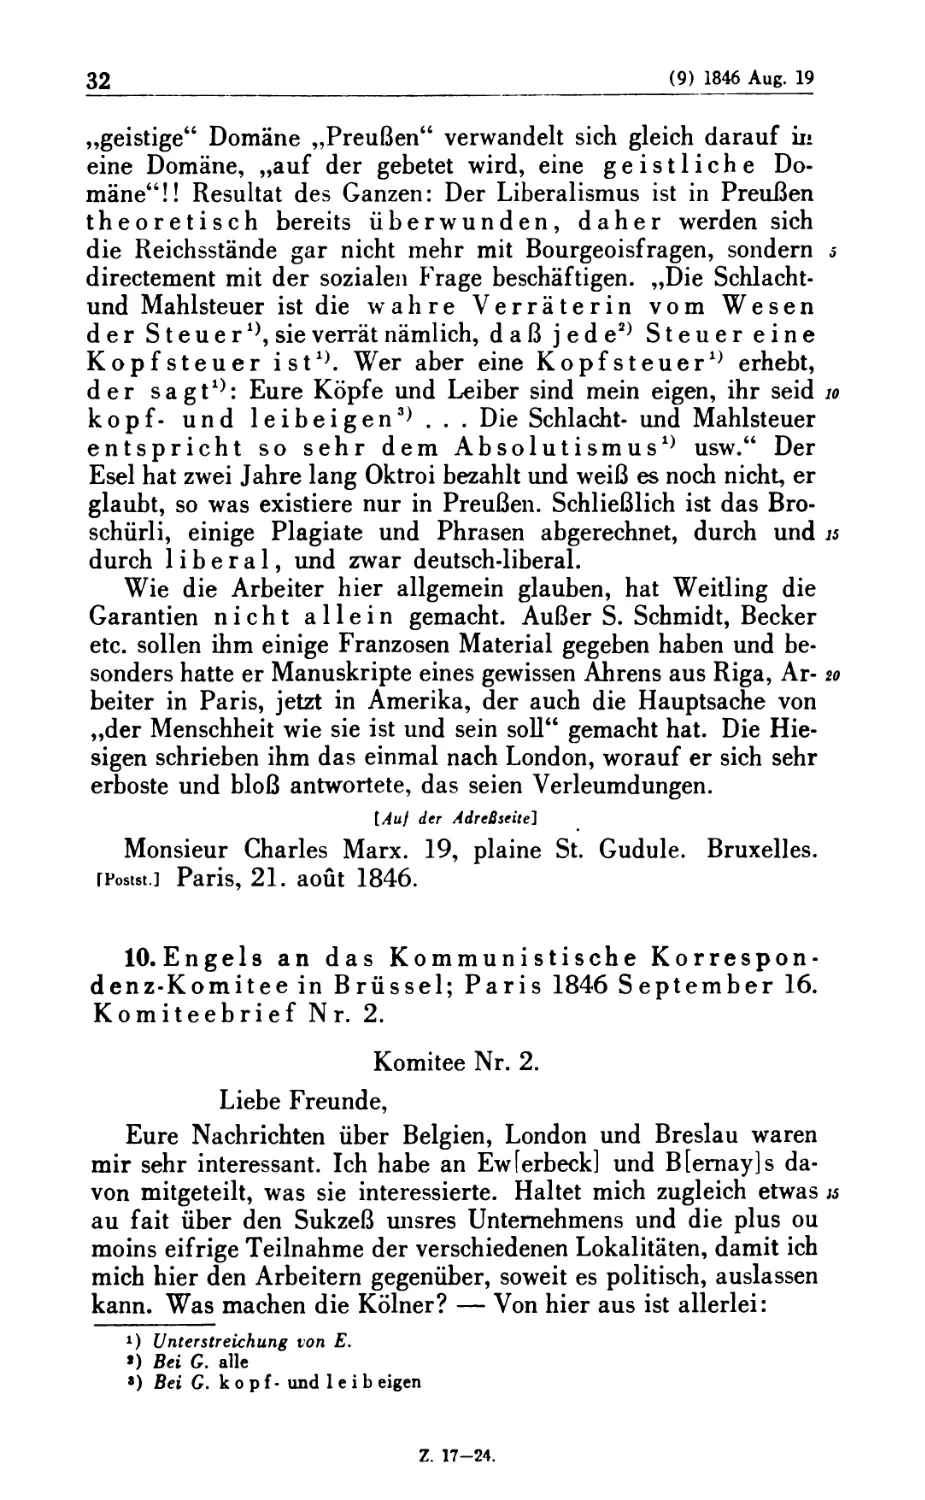 10. Engels an das Kommunistische Korrespondenz-Komitee in Brüssel; Paris 1846 September 16. Komiteebrief Nr. 2